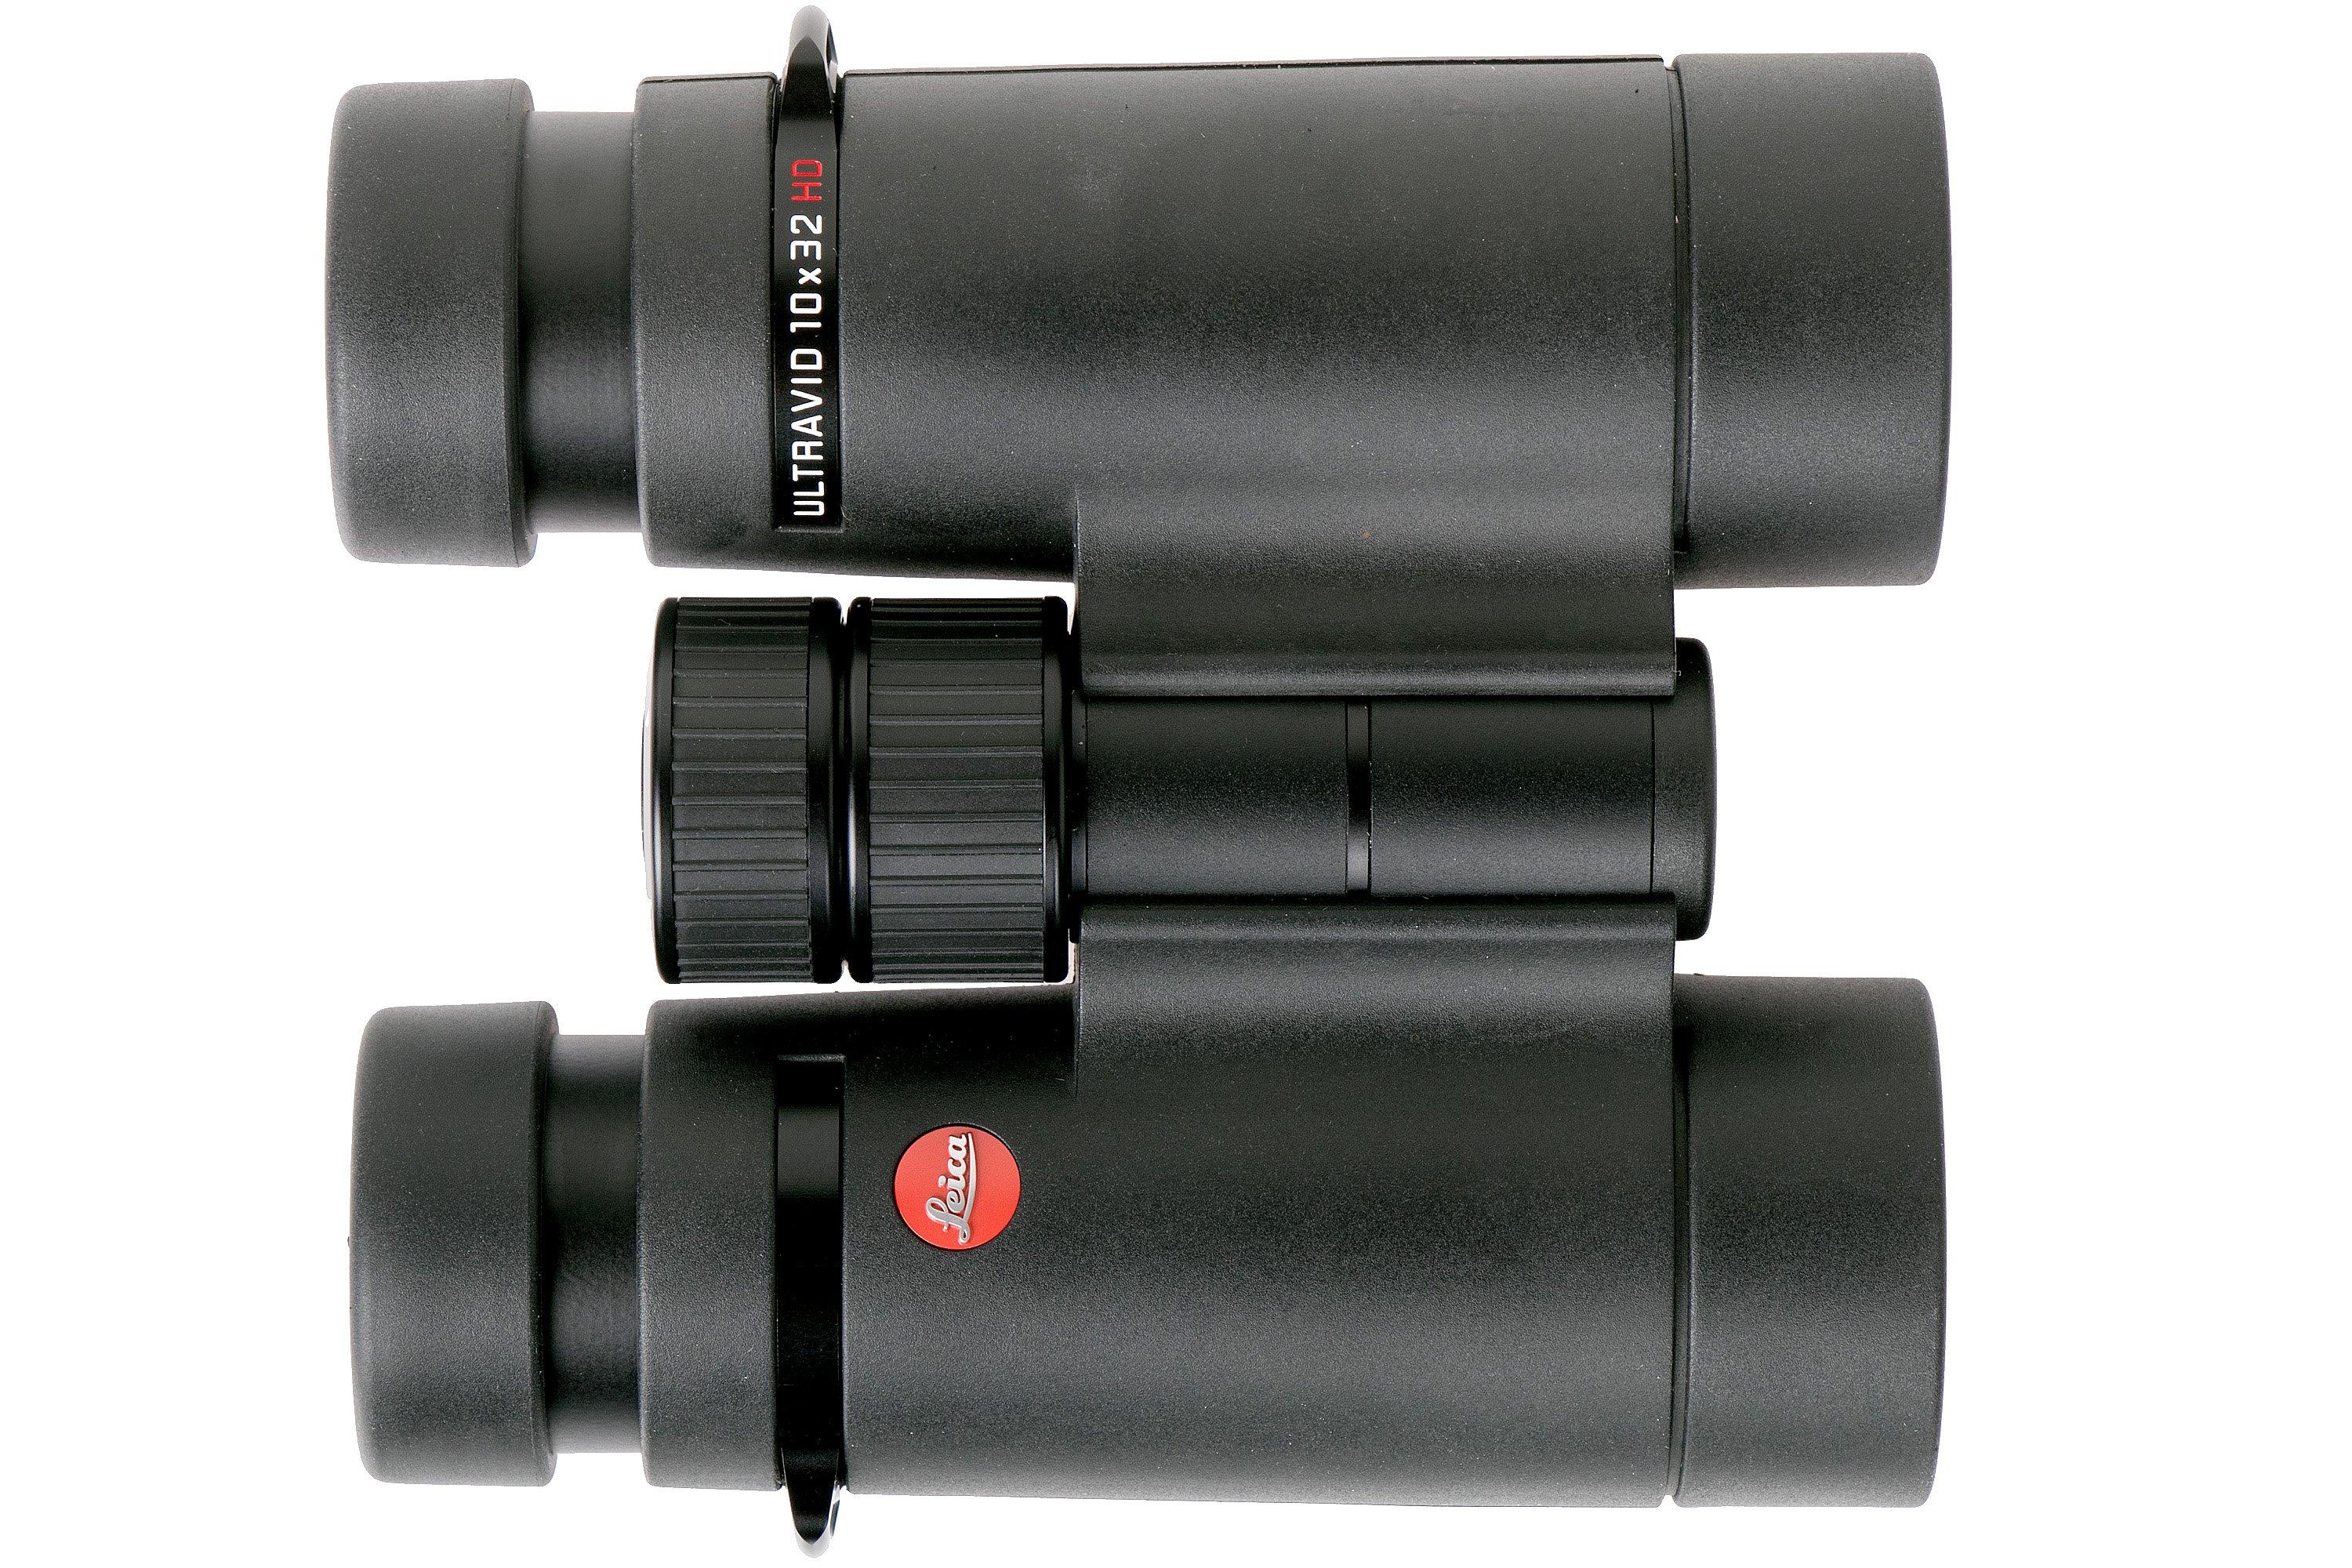 Leica Ultravid 10x32 HD-Plus binoculars